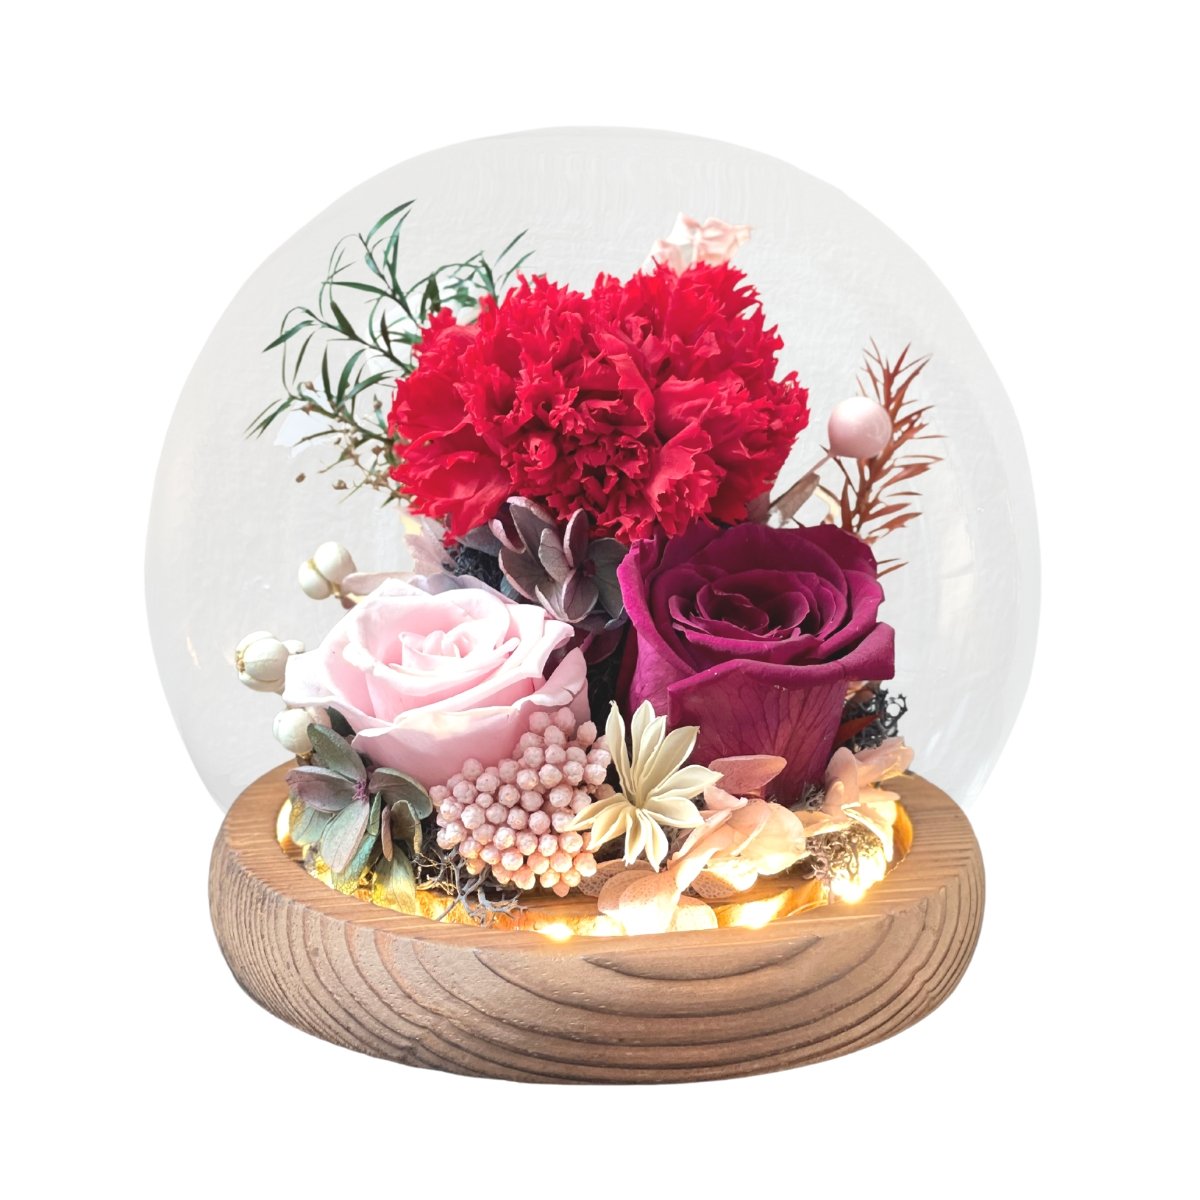 Carnation Blowball - Red - Flower - Preserved Flowers & Fresh Flower Florist Gift Store